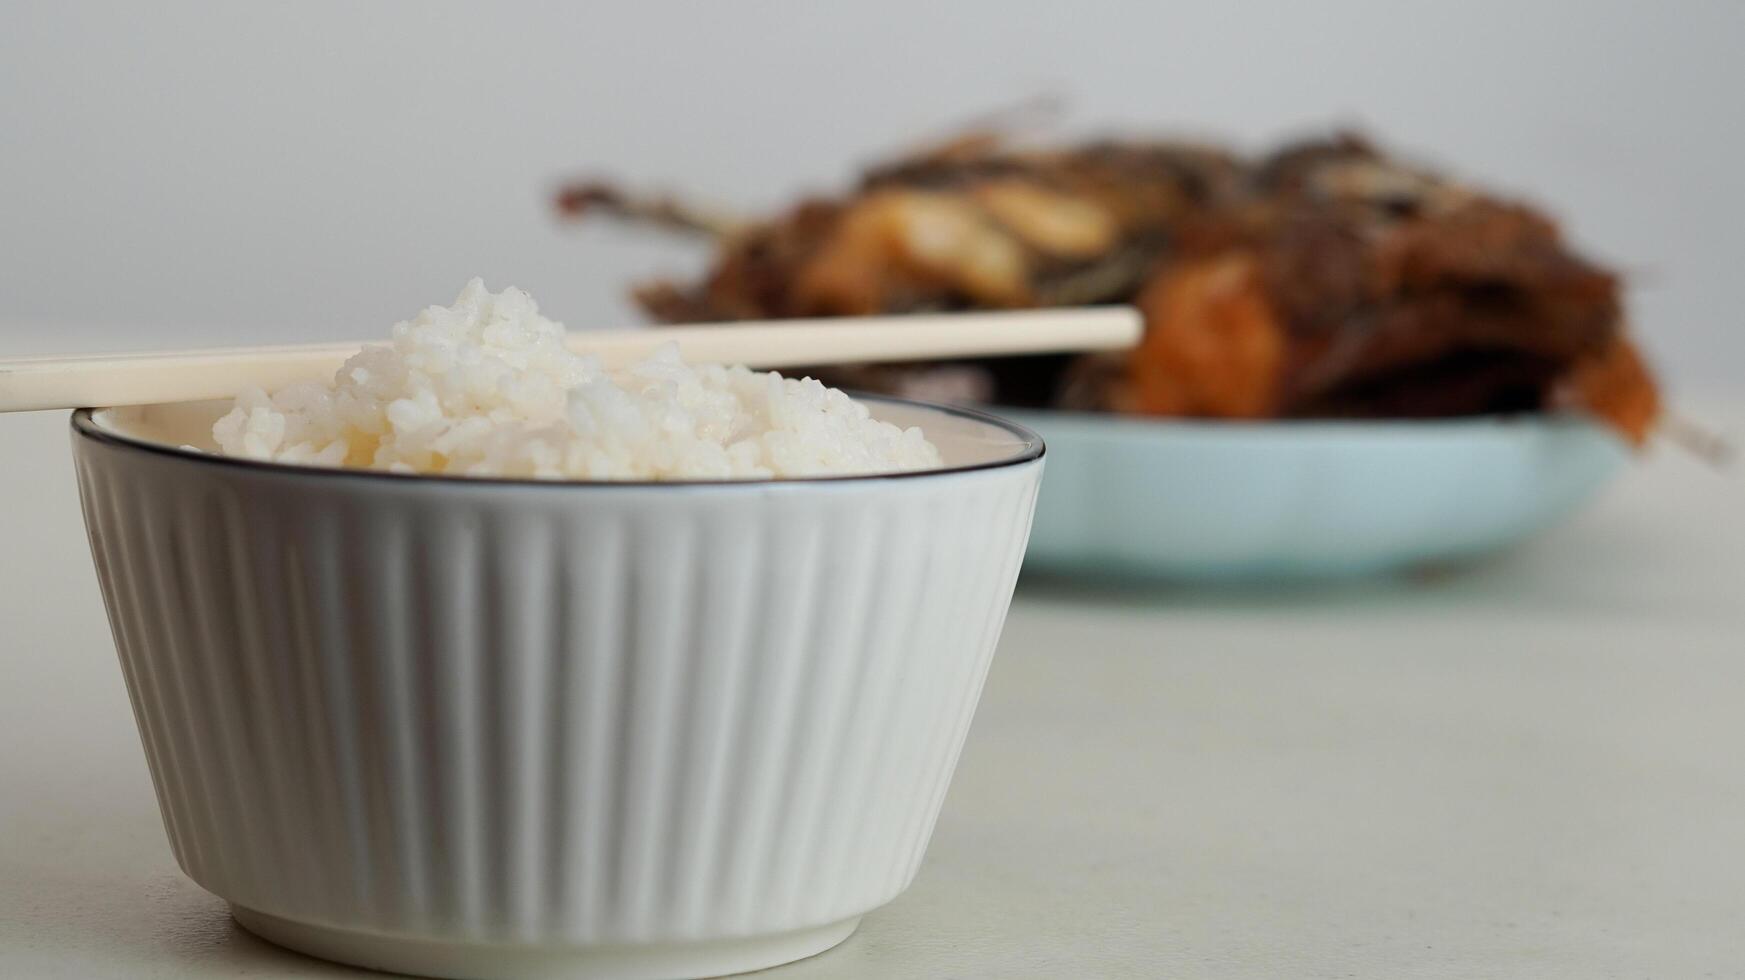 blanc riz dans une bol et frit poisson sur une blanc assiette sont servi sur le table photo